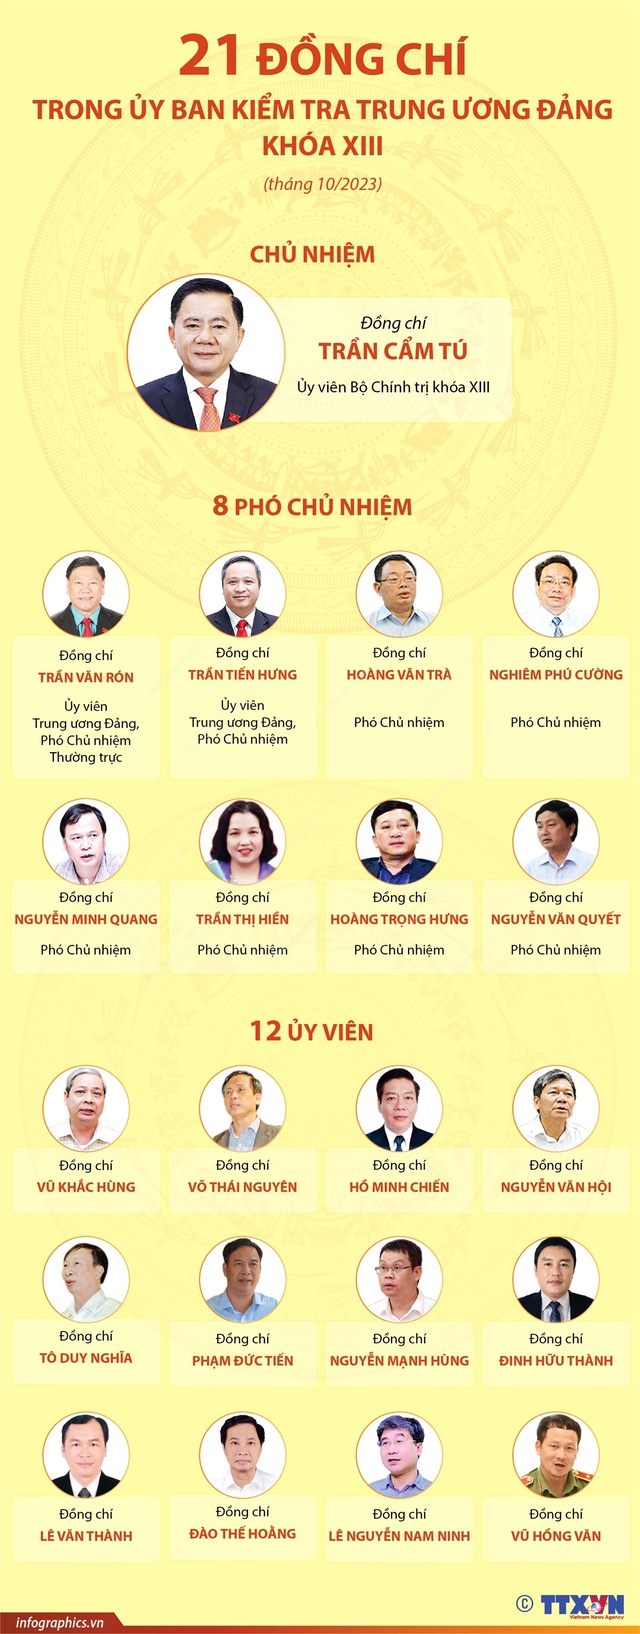 21 đồng chí trong Ủy ban Kiểm tra Trung ương Đảng khóa XIII sau khi bầu bổ sung - Ảnh 1.